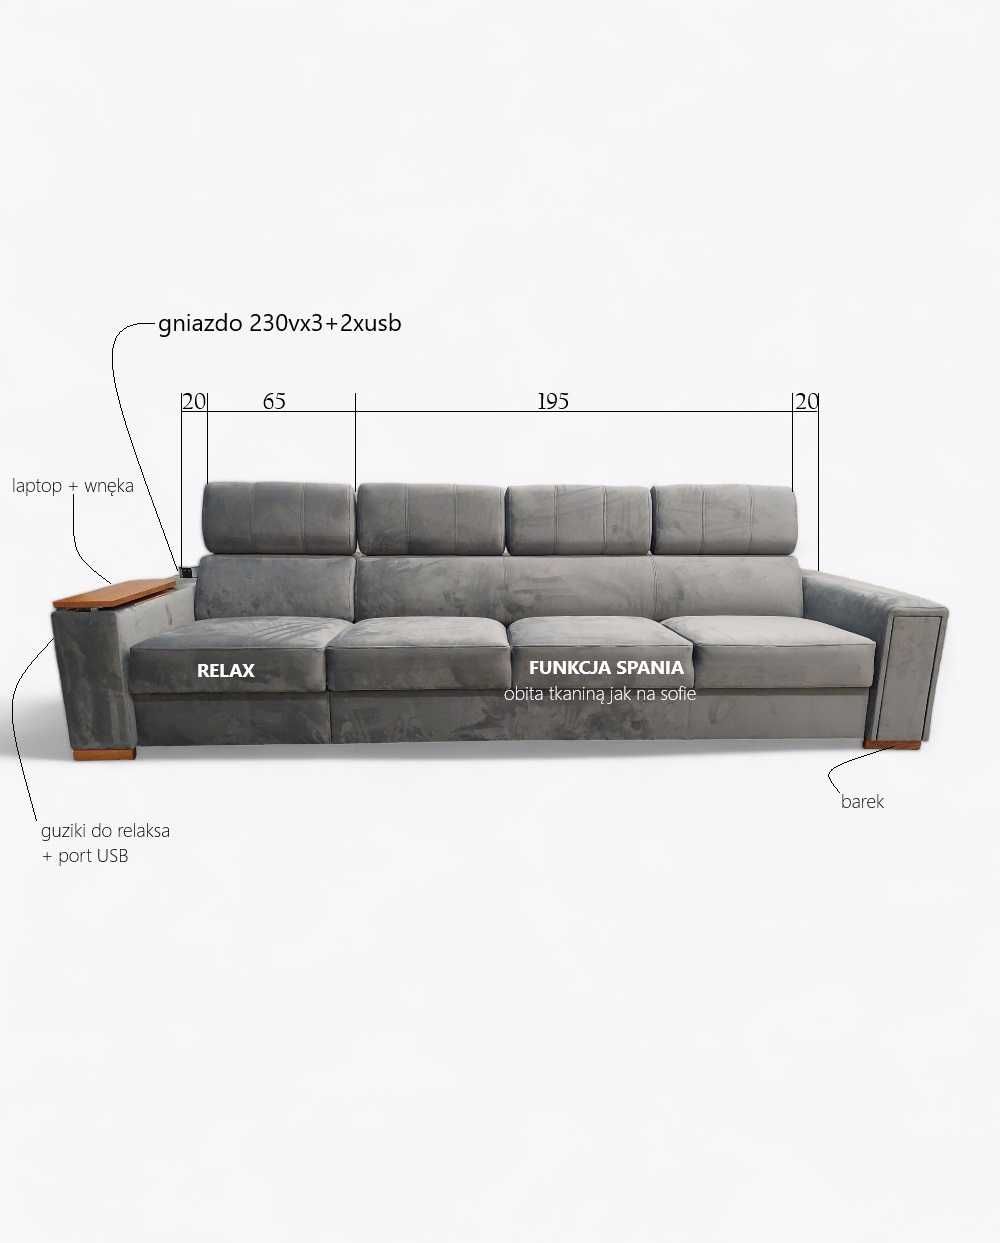 Sofa Loft 124. z funkcją spania, fotelem wysuwanym, zagłówkami